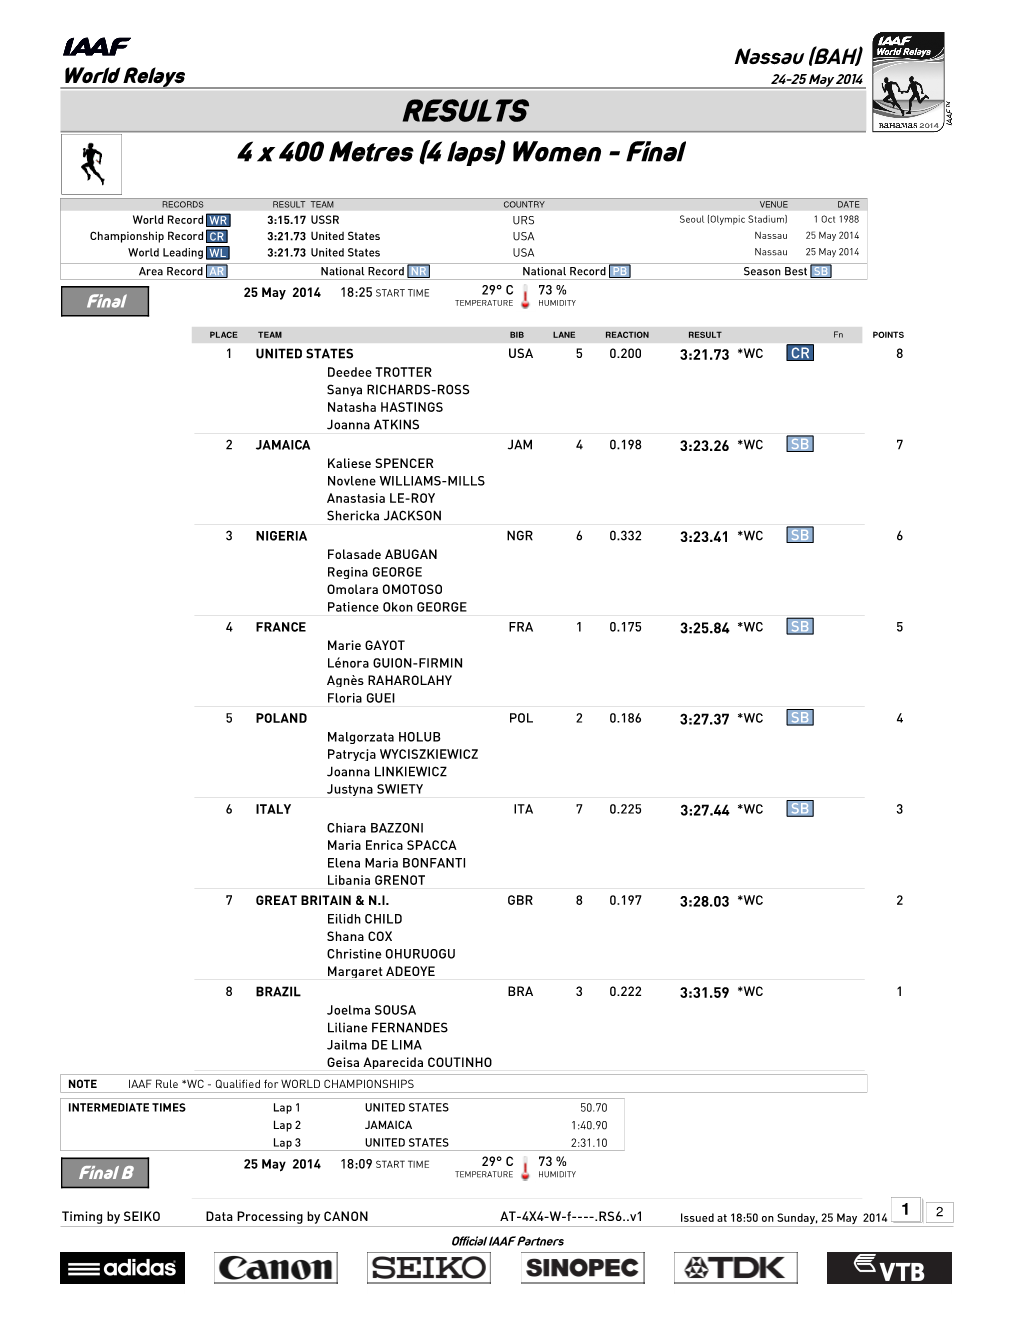 RESULTS 4 X 400 Metres (4 Laps) Women - Final